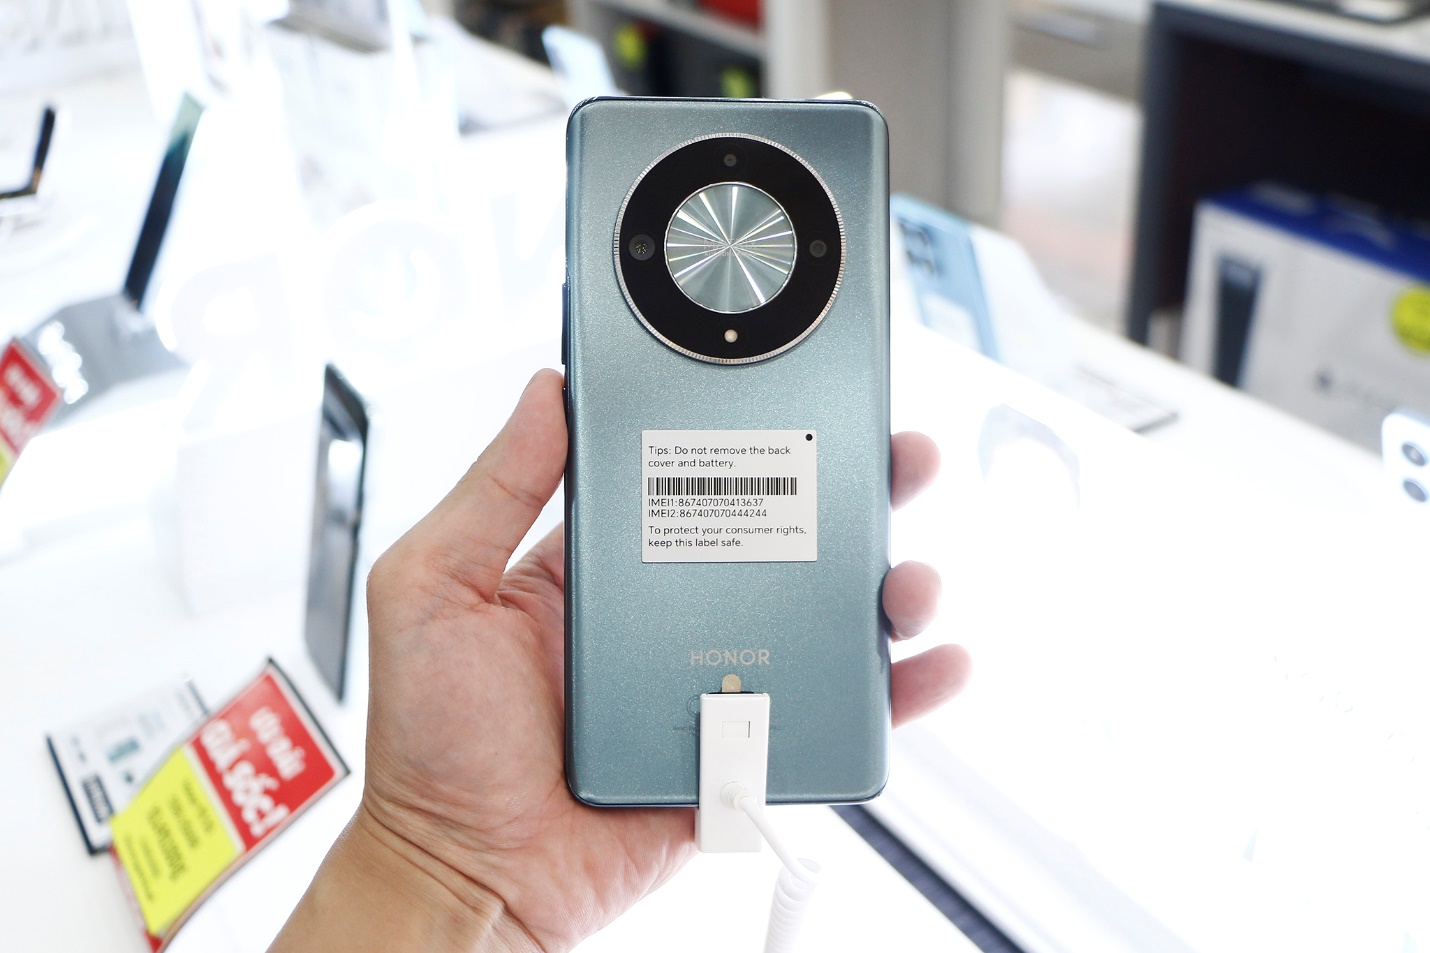 HONOR X9b 5G độc quyền lên kệ, FPT Shop tặng máy hút bụi cầm tay trị giá 740.000 đồng - Ảnh 2.